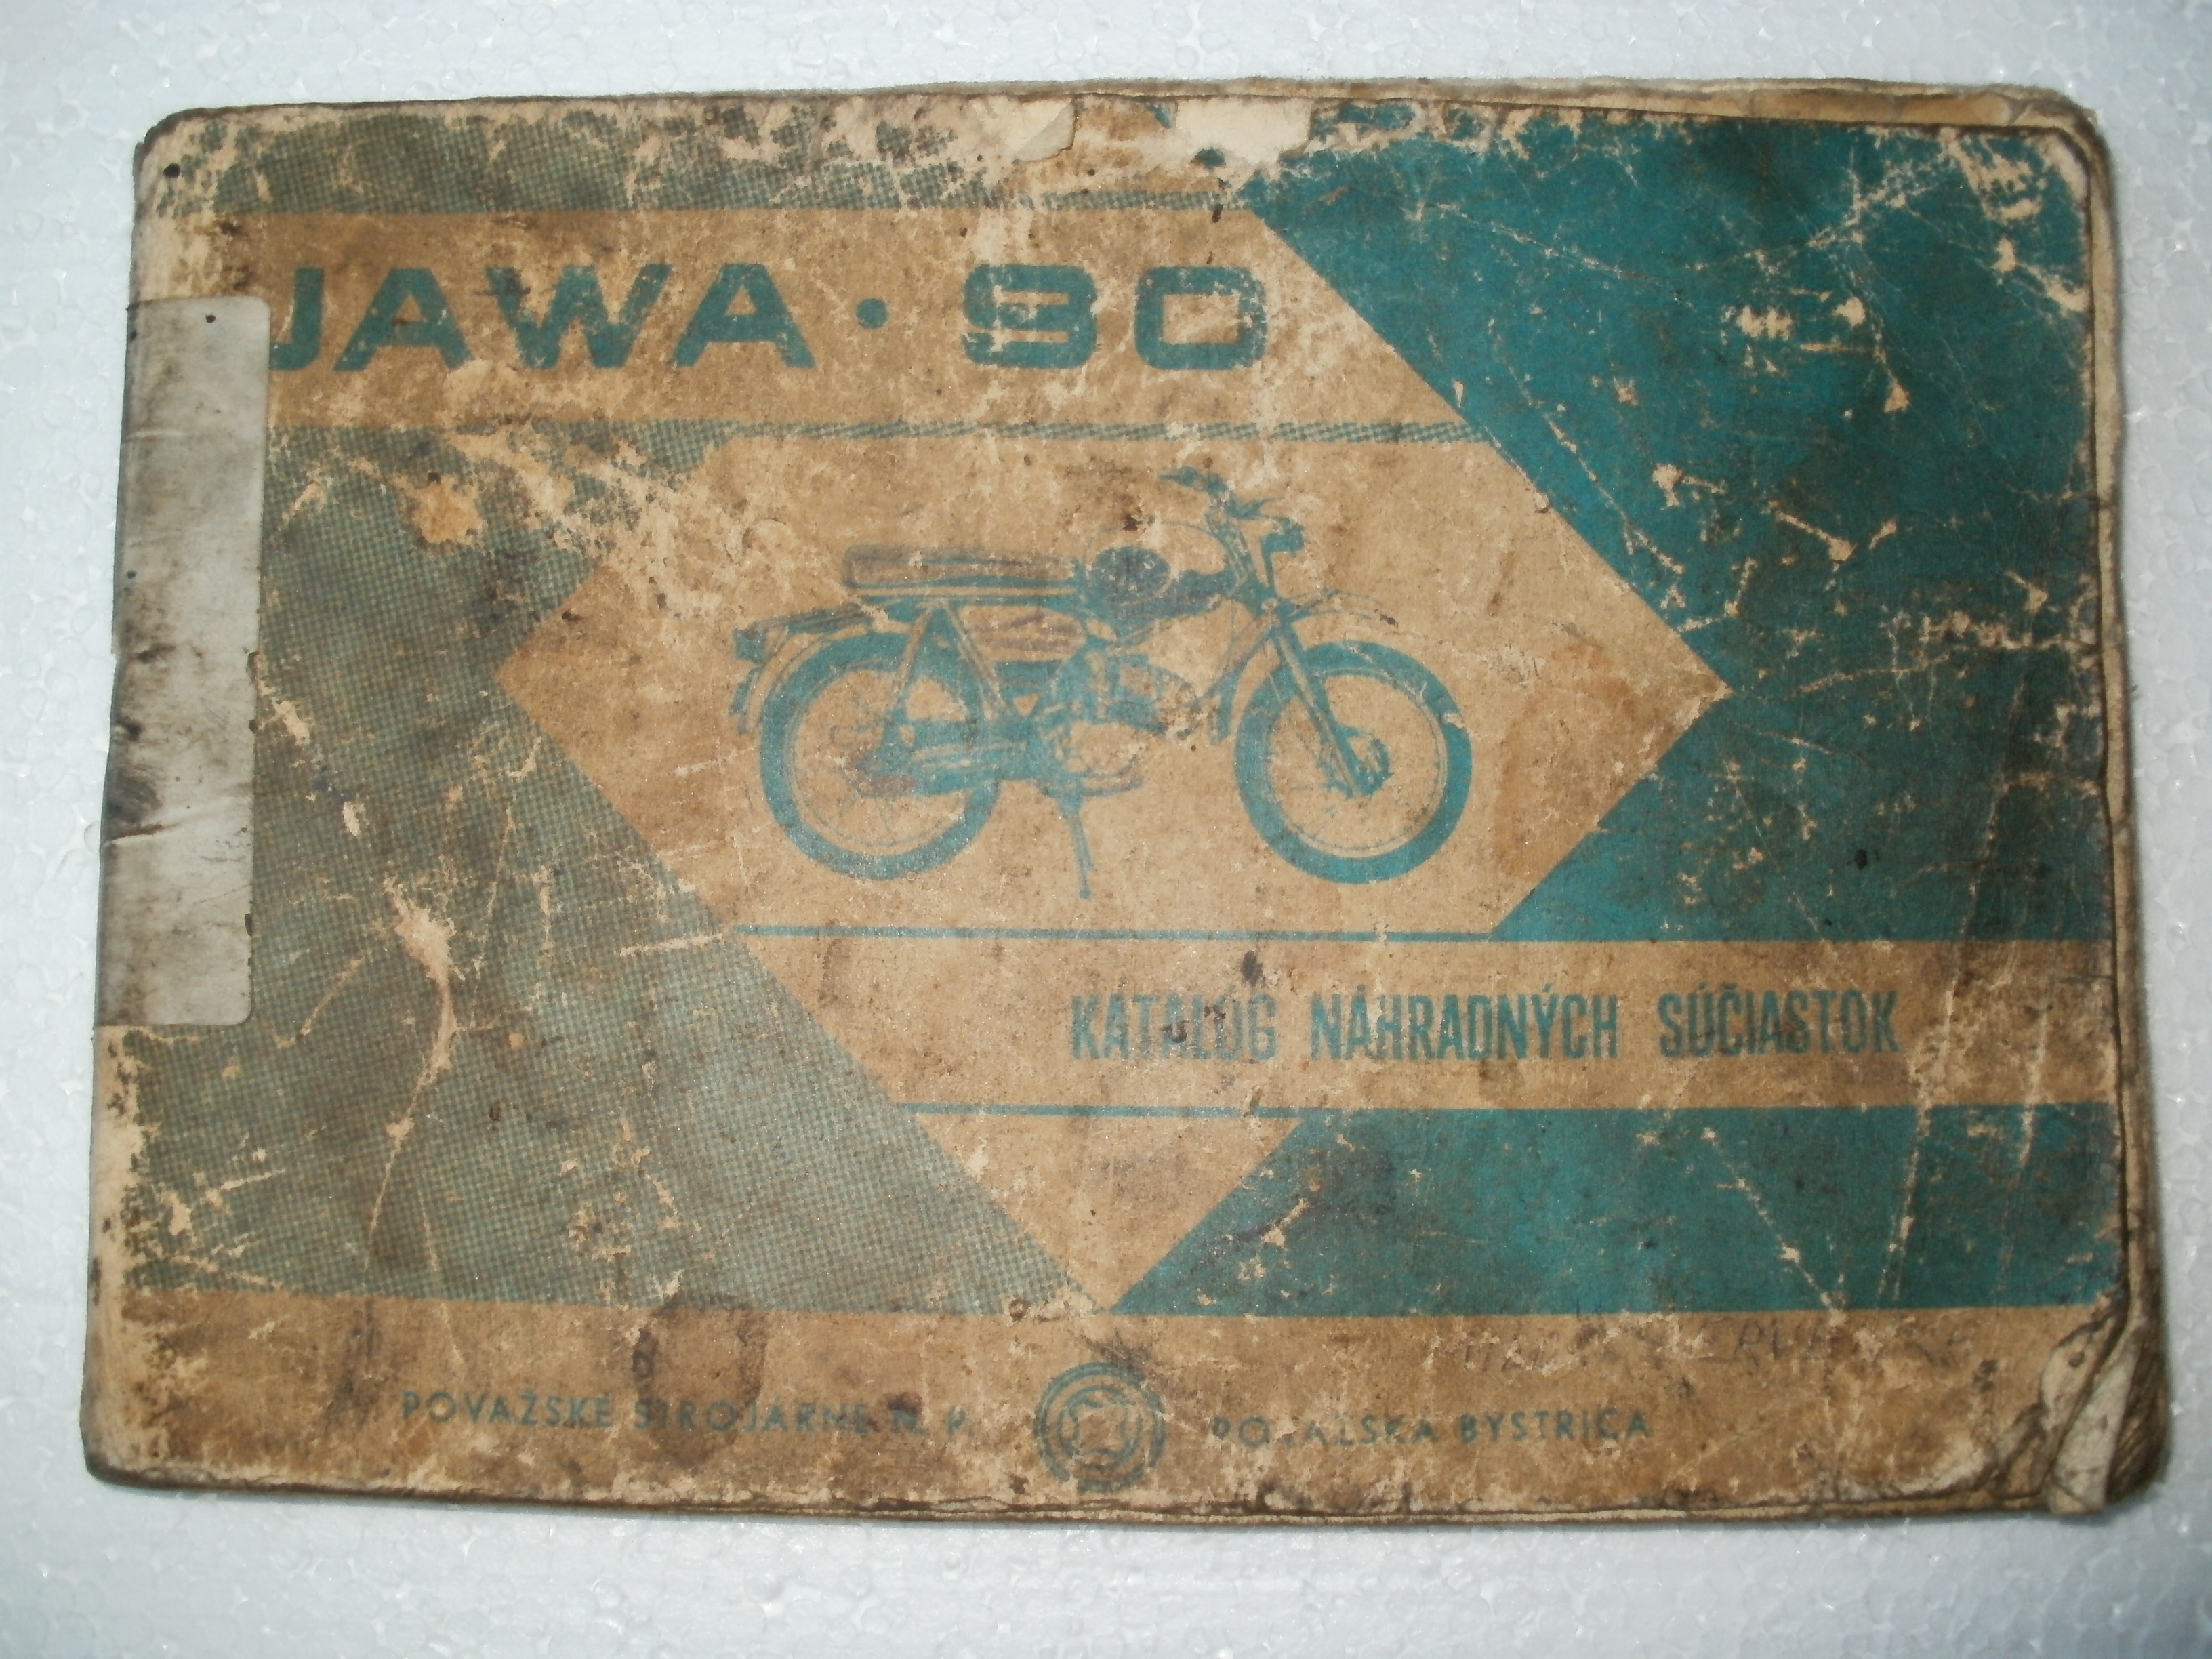 JAWA 90.JPG